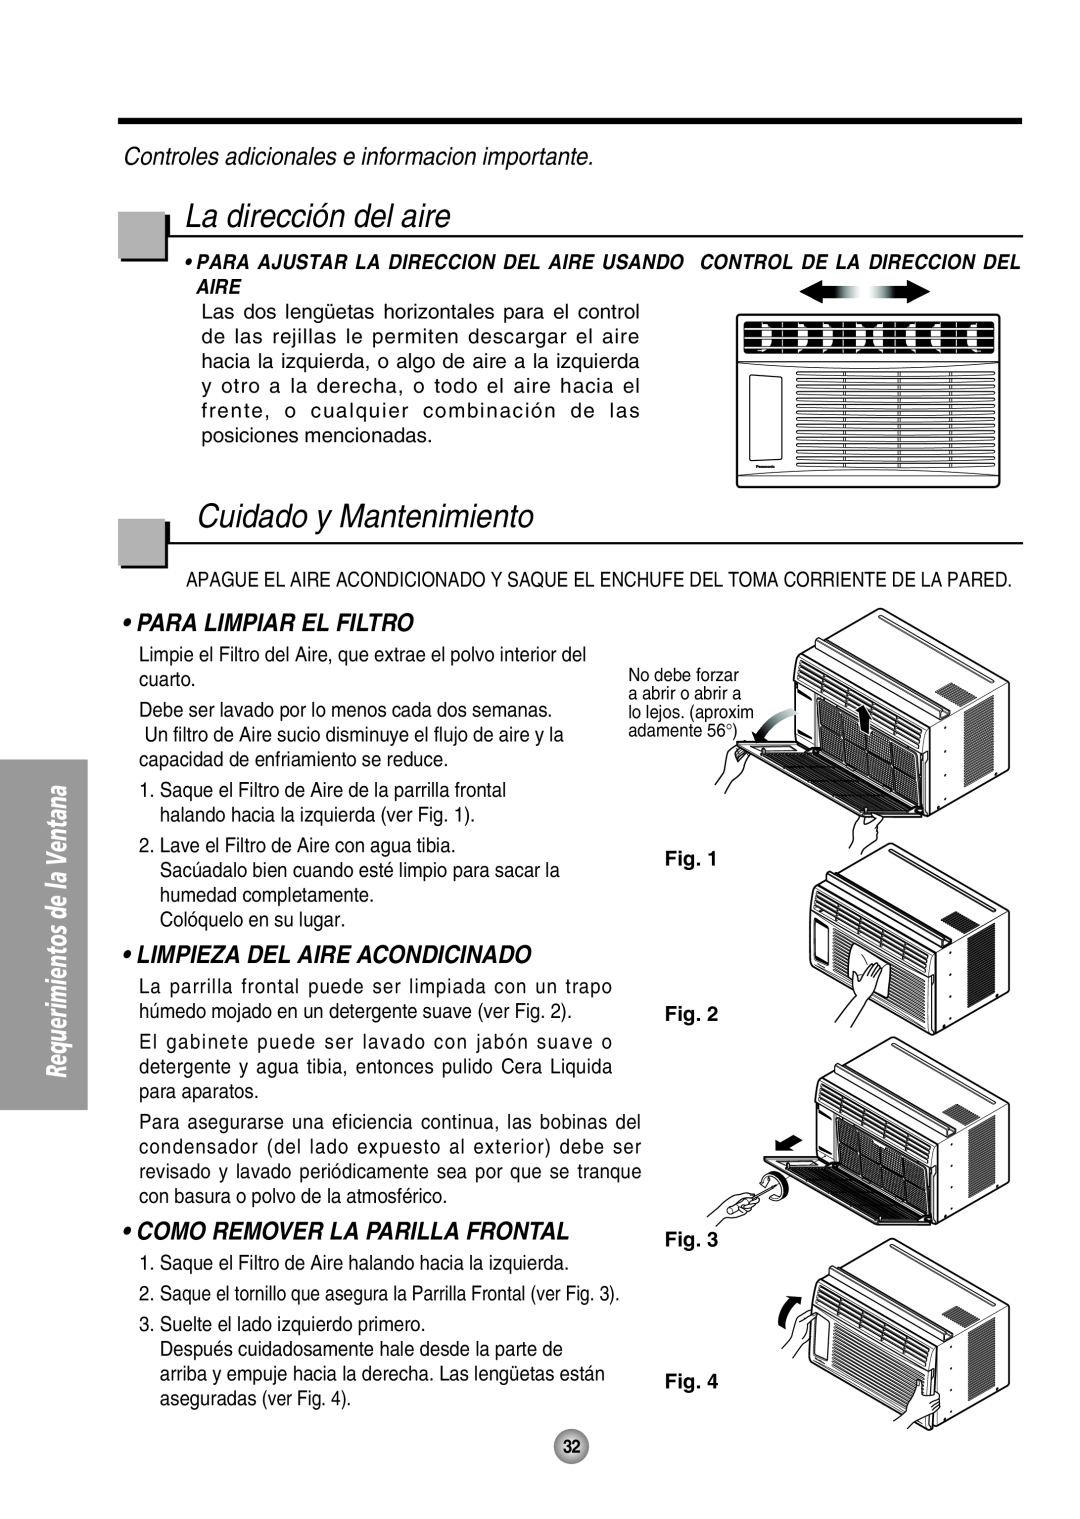 Panasonic CW-XC54HU manual La dirección del aire, Cuidado y Mantenimiento, Controles adicionales e informacion importante 